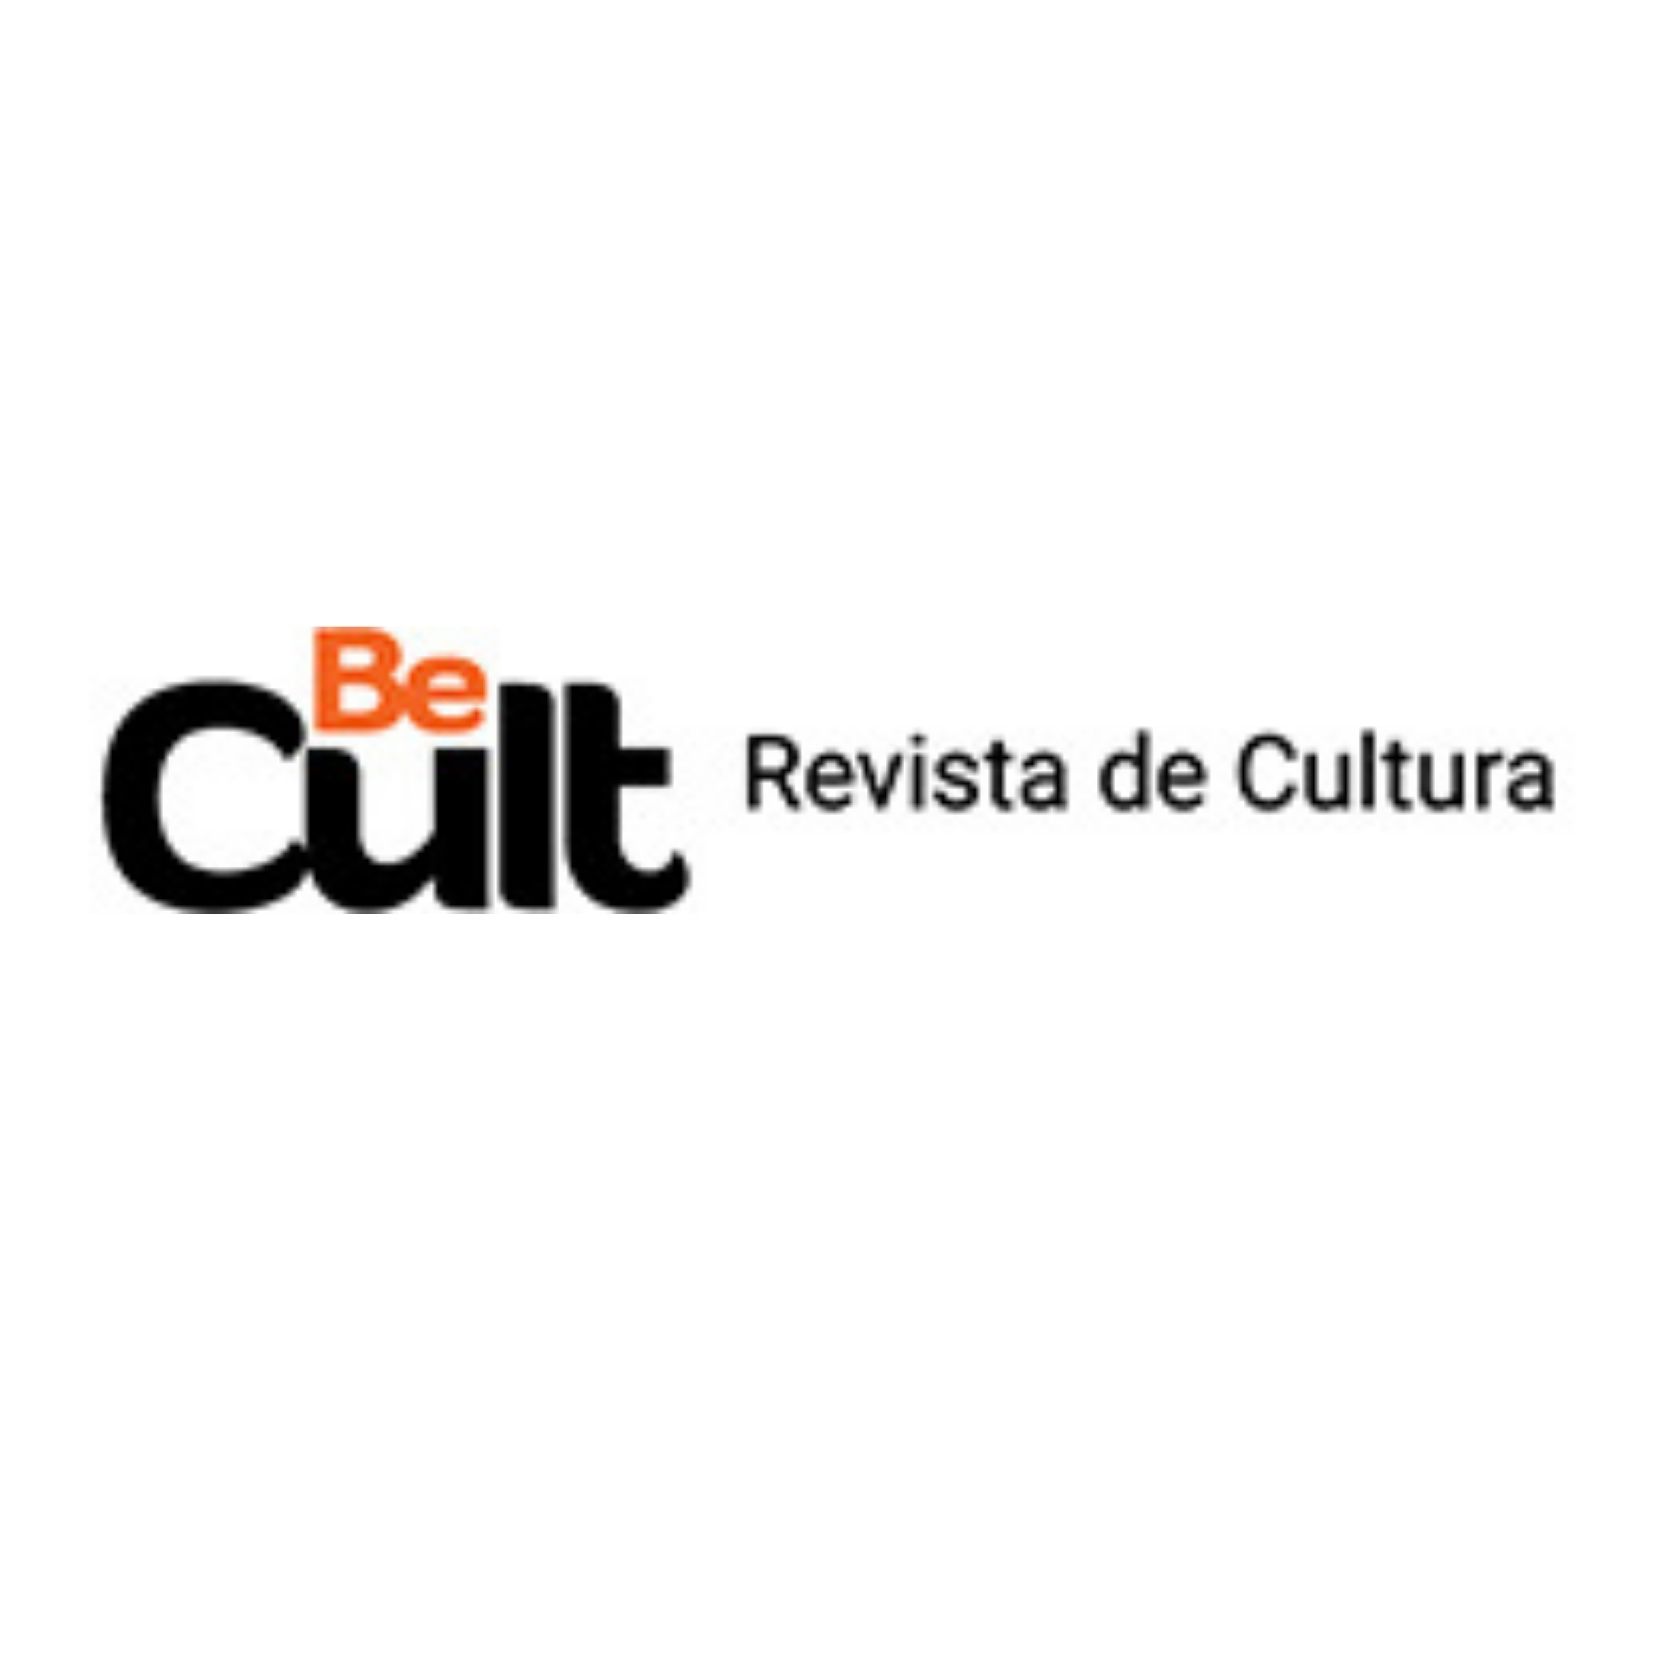 Be Cult Revista de Cultura